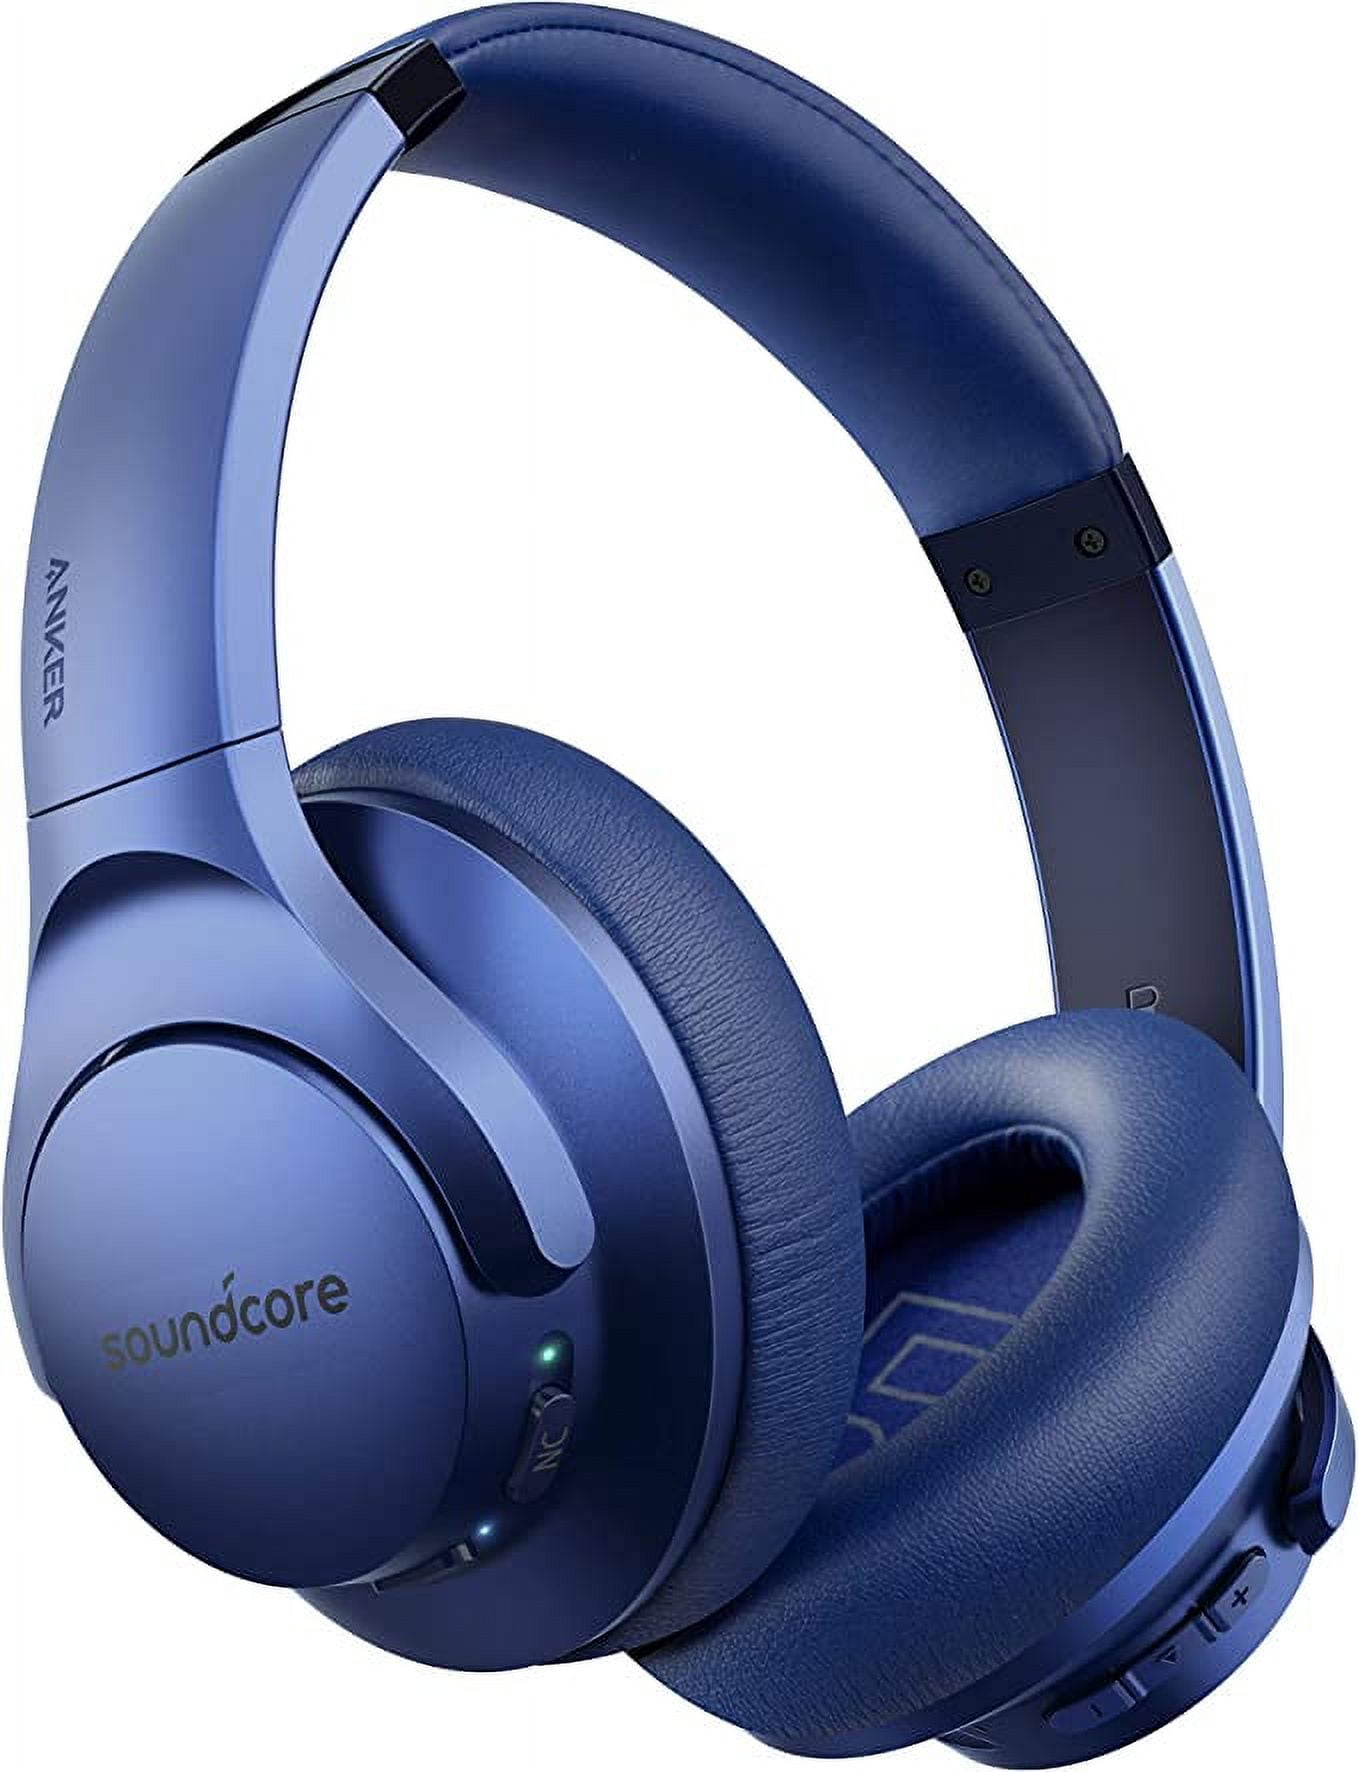 Anker Soundcore life Q30 Headphone - Buy Anker headphones at Pointek